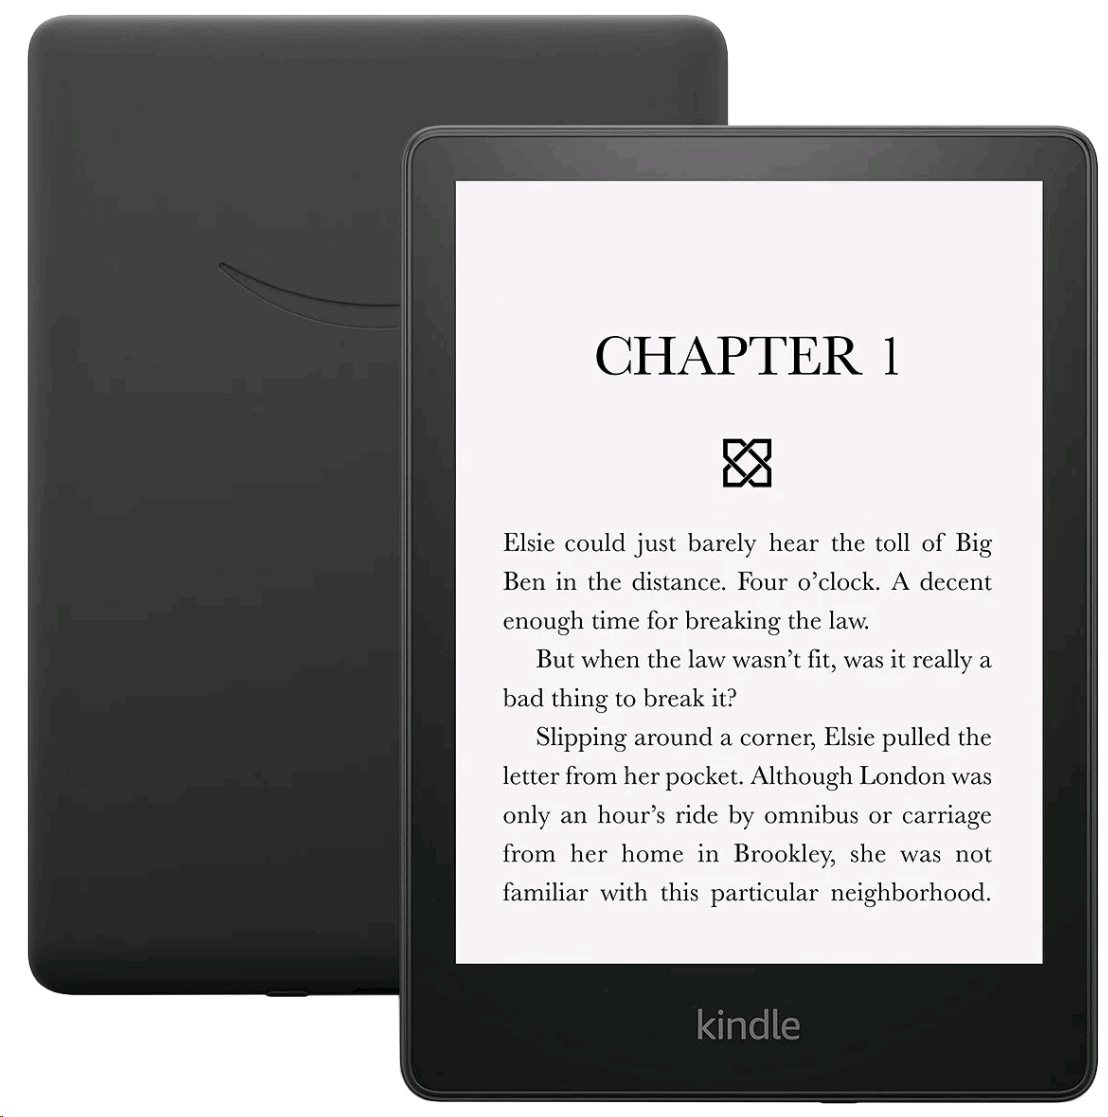 NEW Pocketbook ERA Copper 7 E-ink Carta E-Book 64GB Reader Wi-Fi microSD  Slot